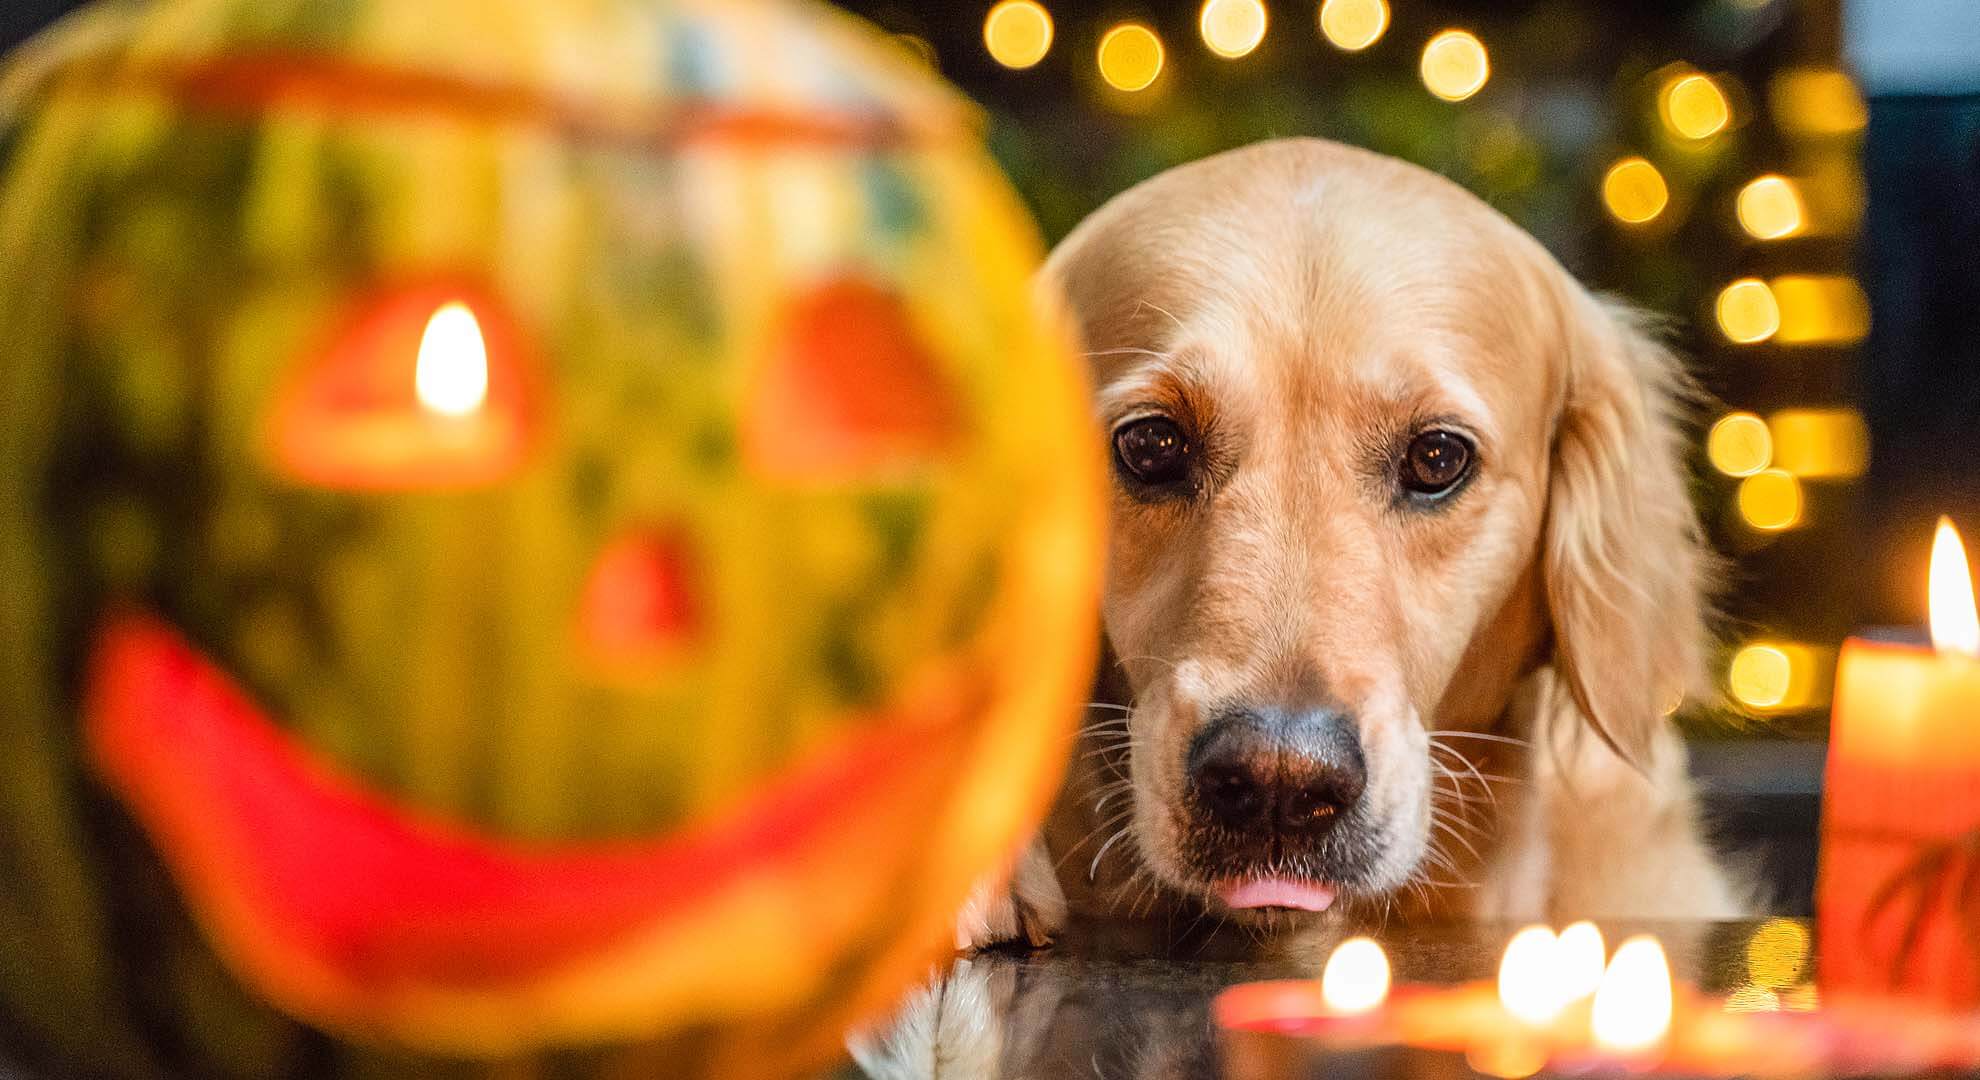 Dog beside a Halloween pumpkin with candles